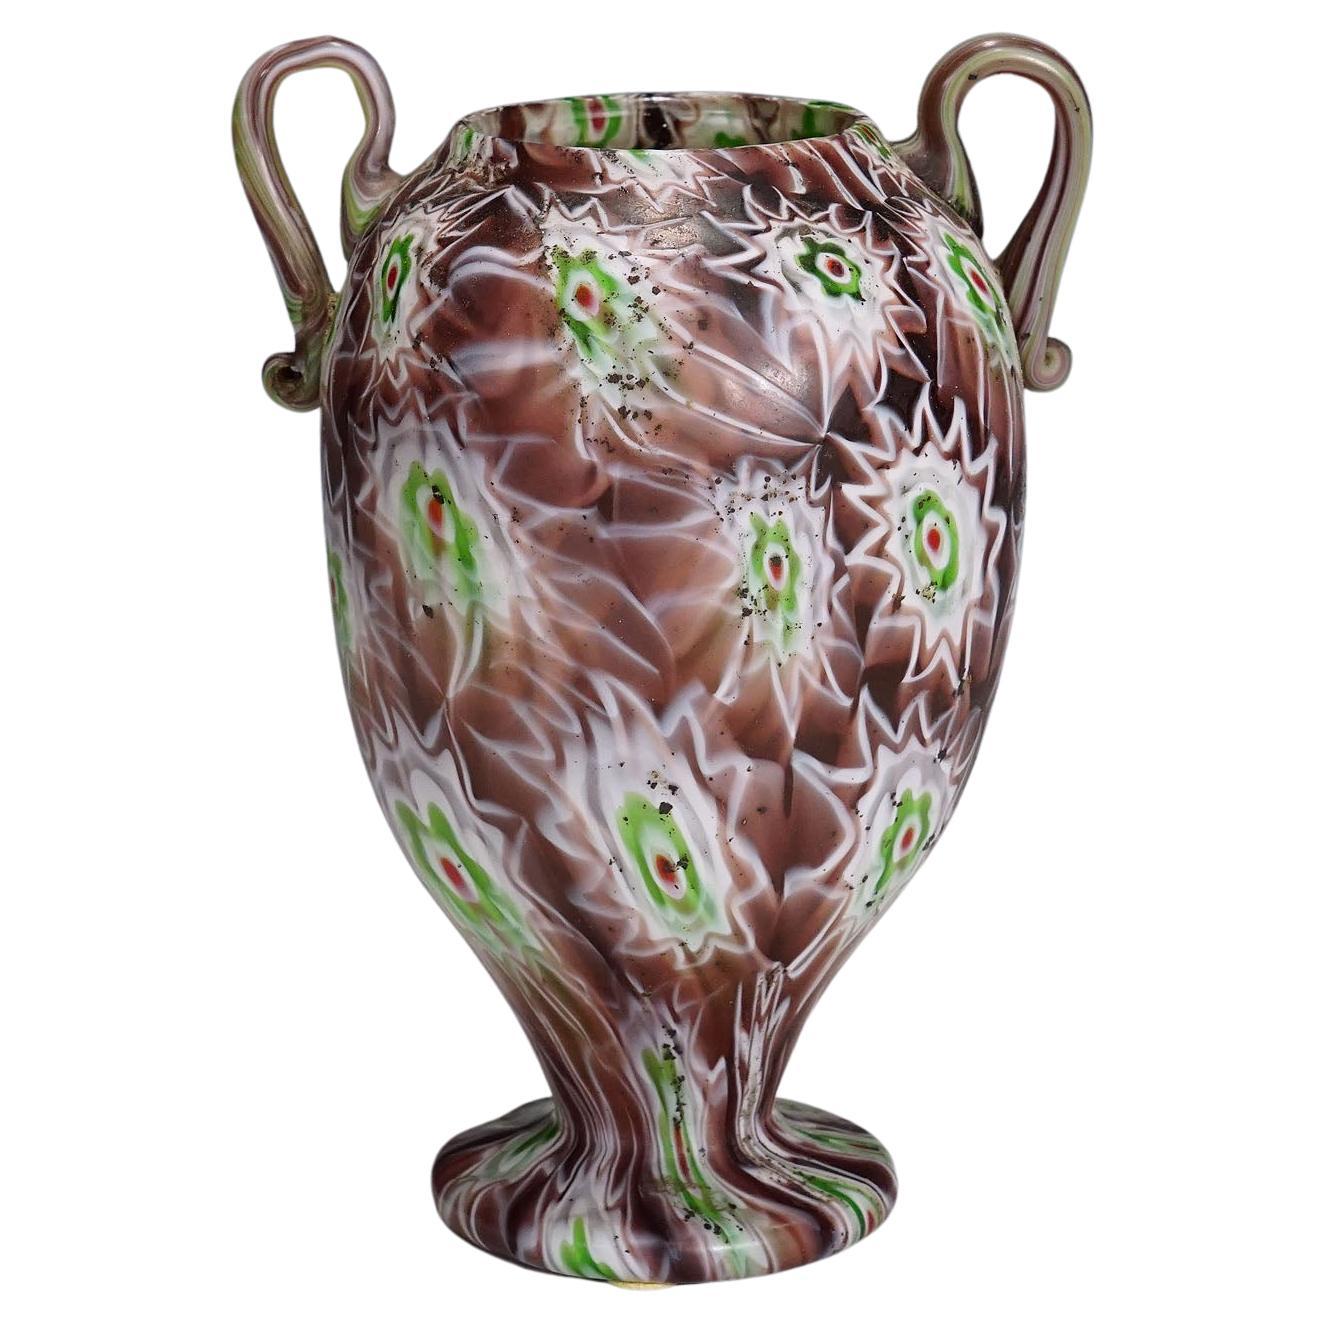 Antique Millefiori Vase in Purple, Green and White, Fratelli Toso Murano 1910 For Sale